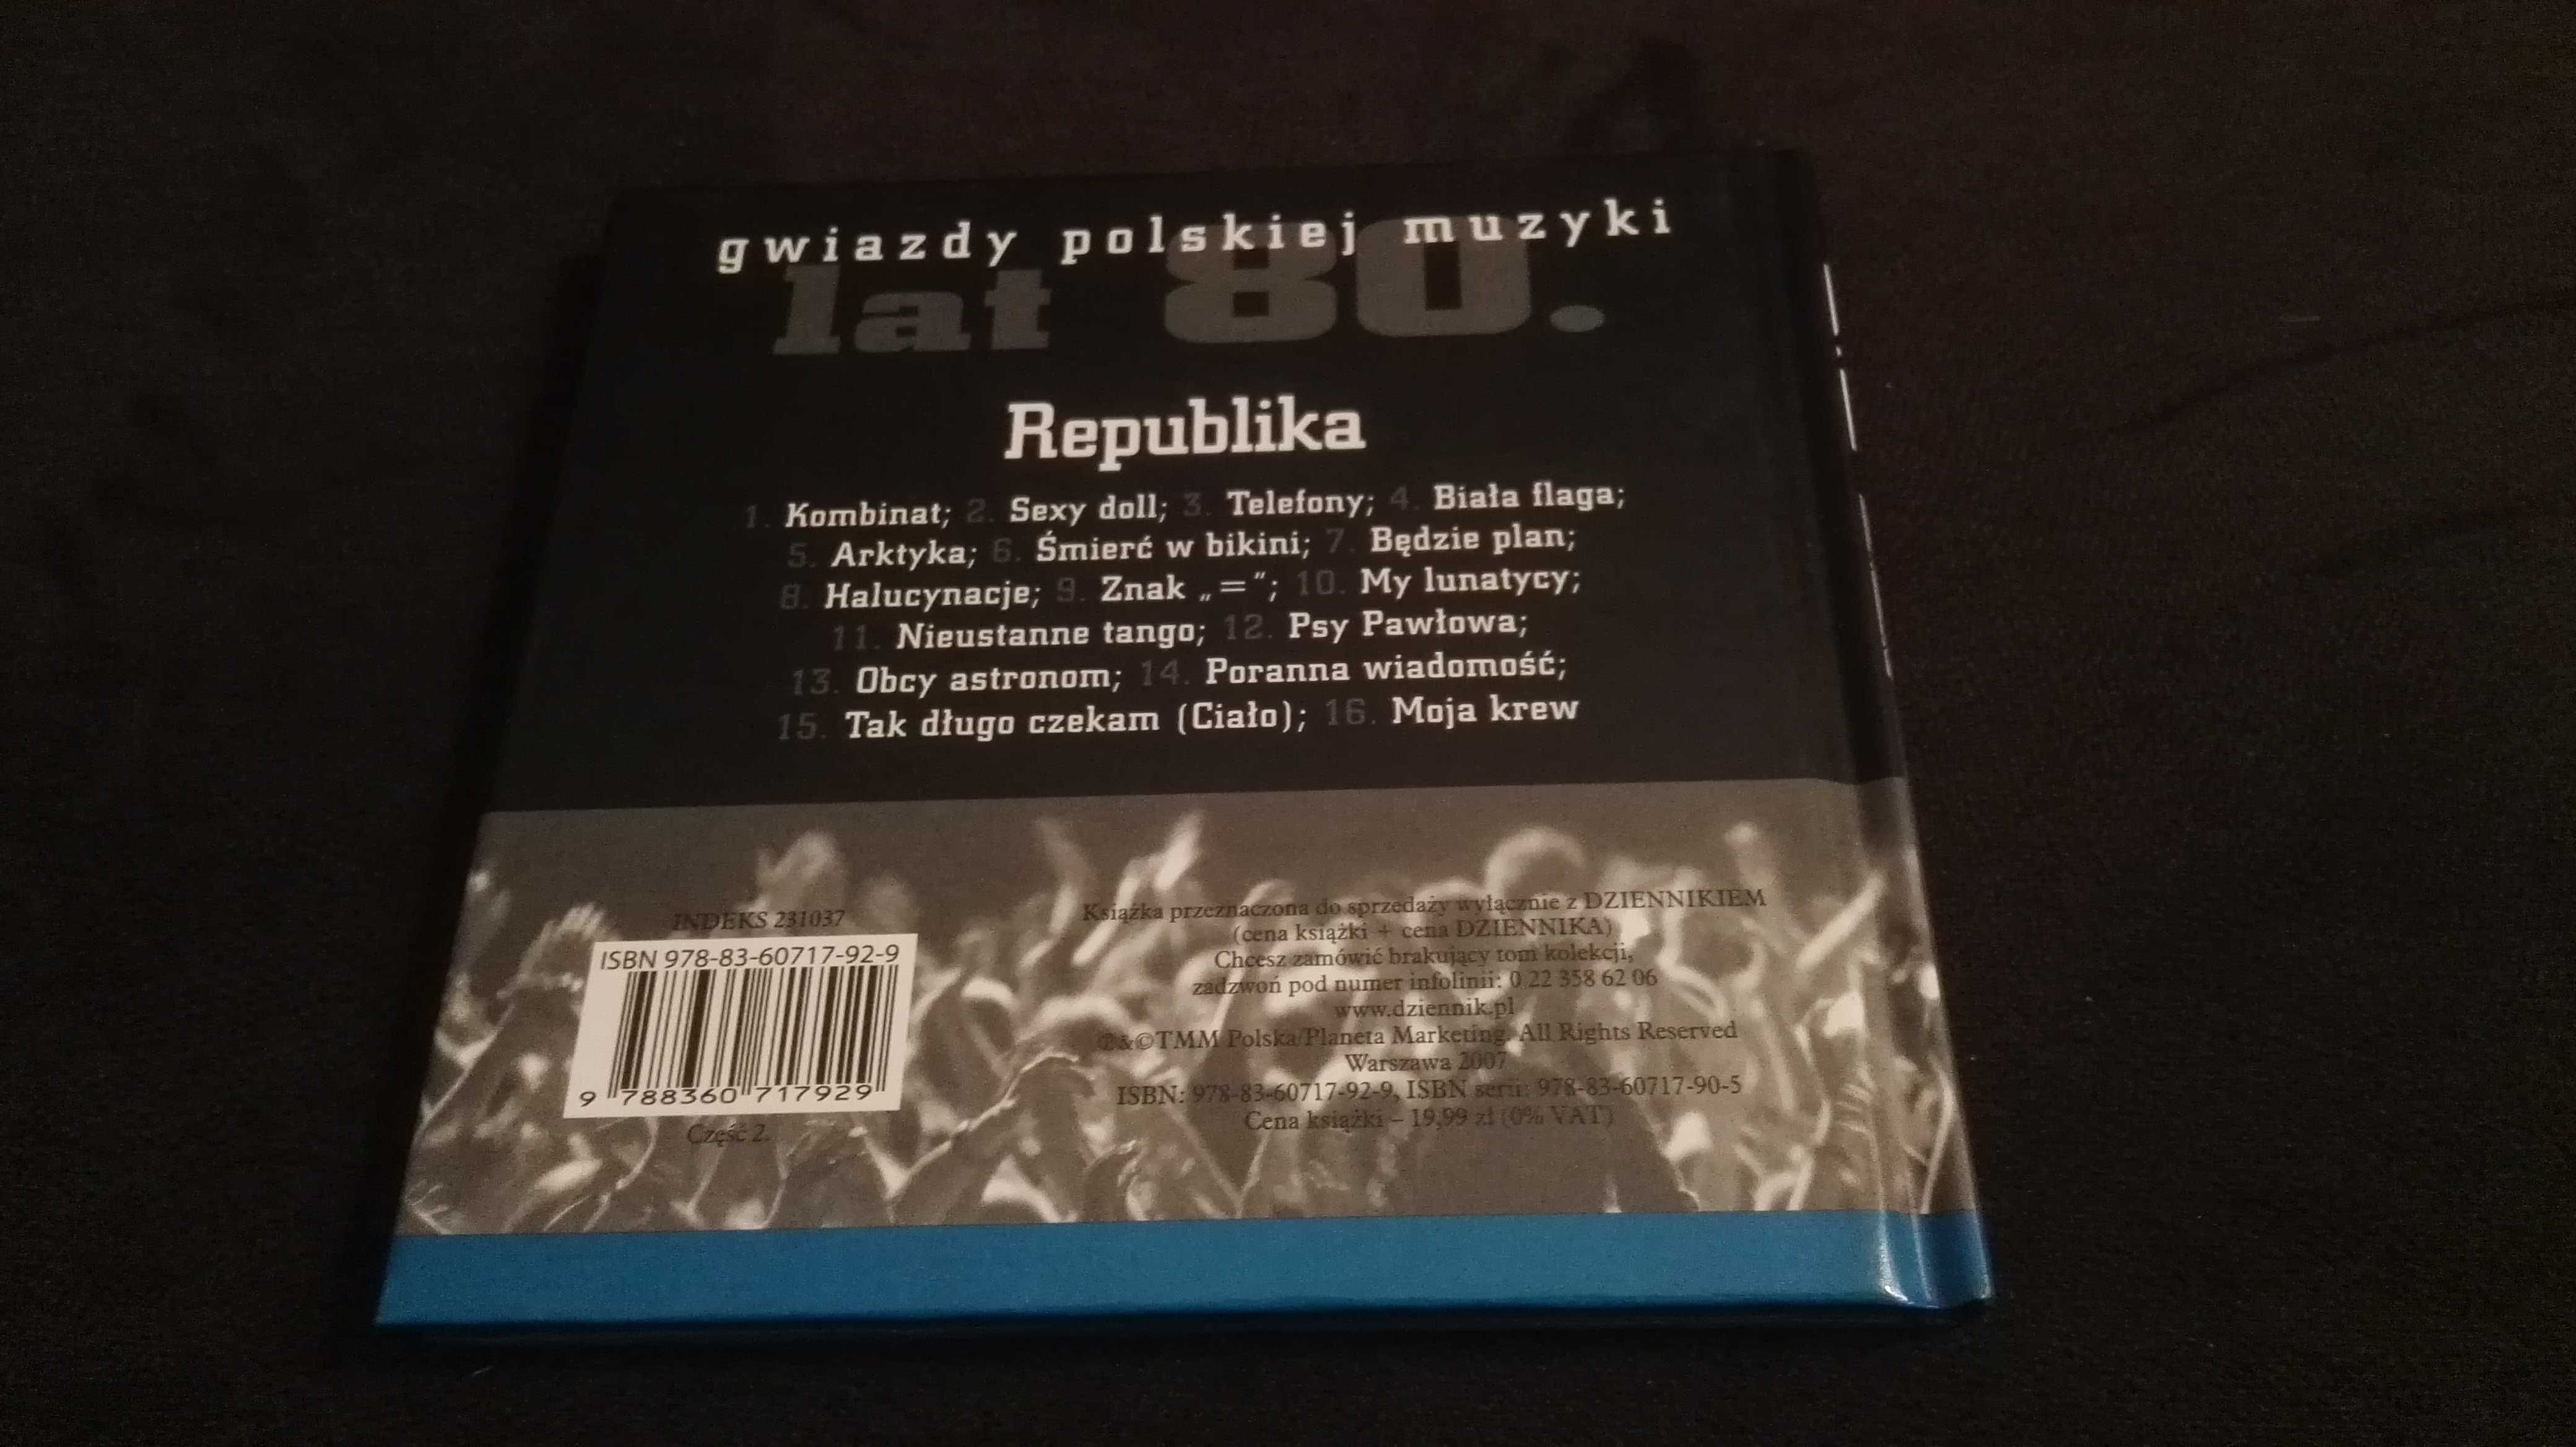 Płyta CD Republika Gwiazdy polskiej muzyki 2007 Kolekcja Dziennika